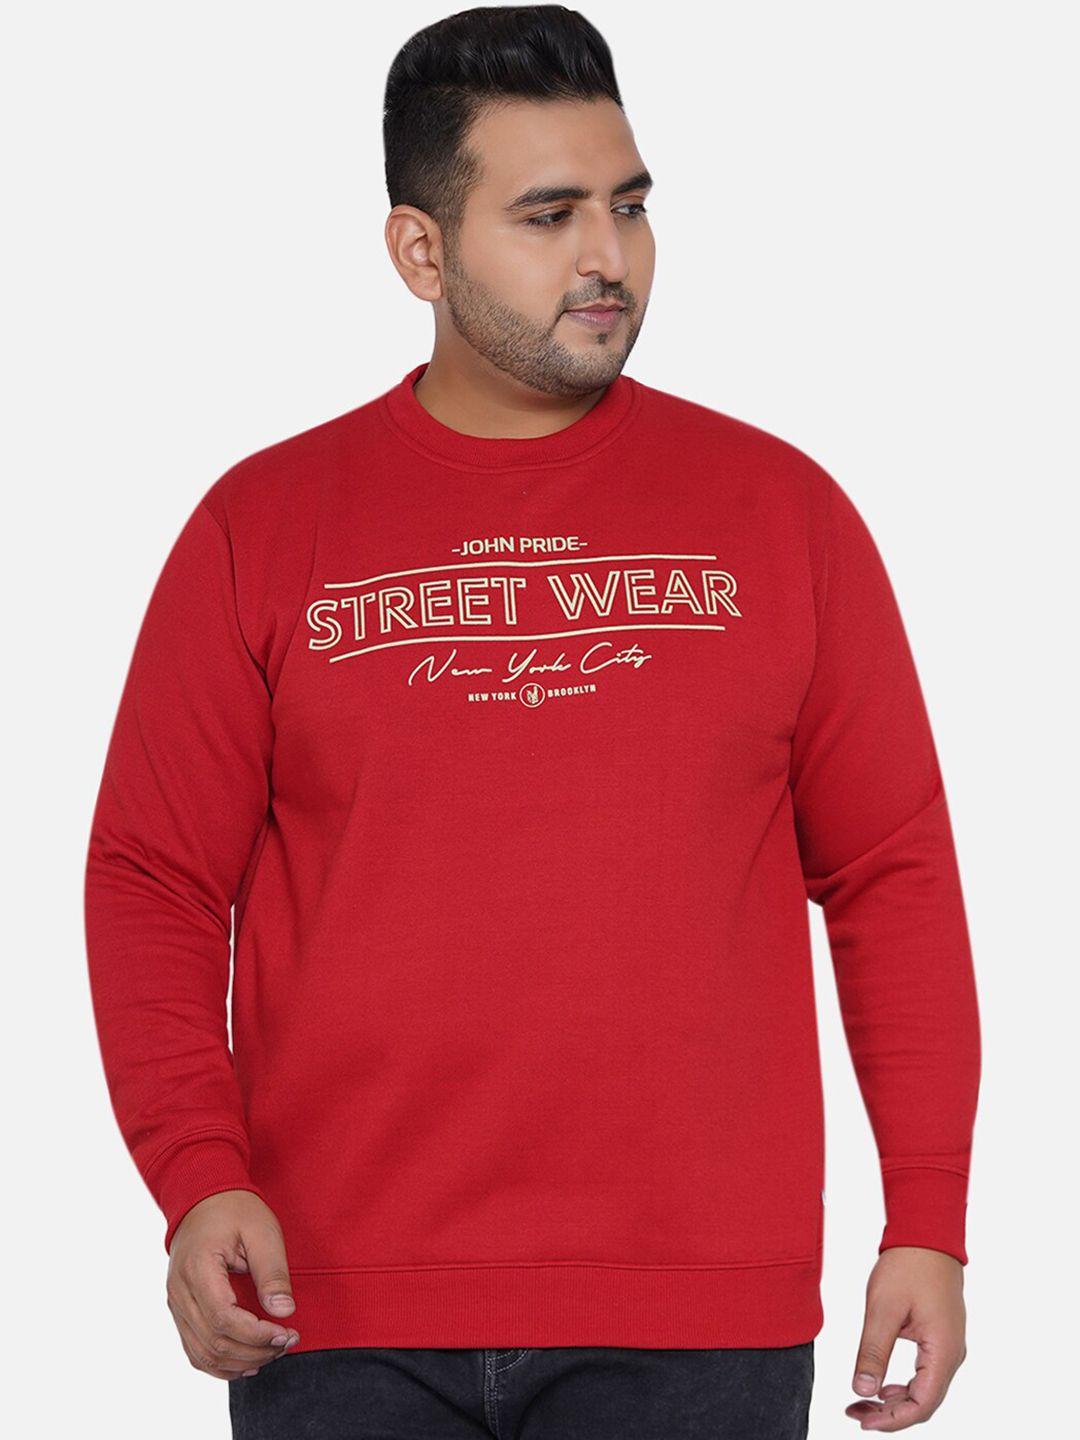 john pride plus size men red printed round neck sweatshirt